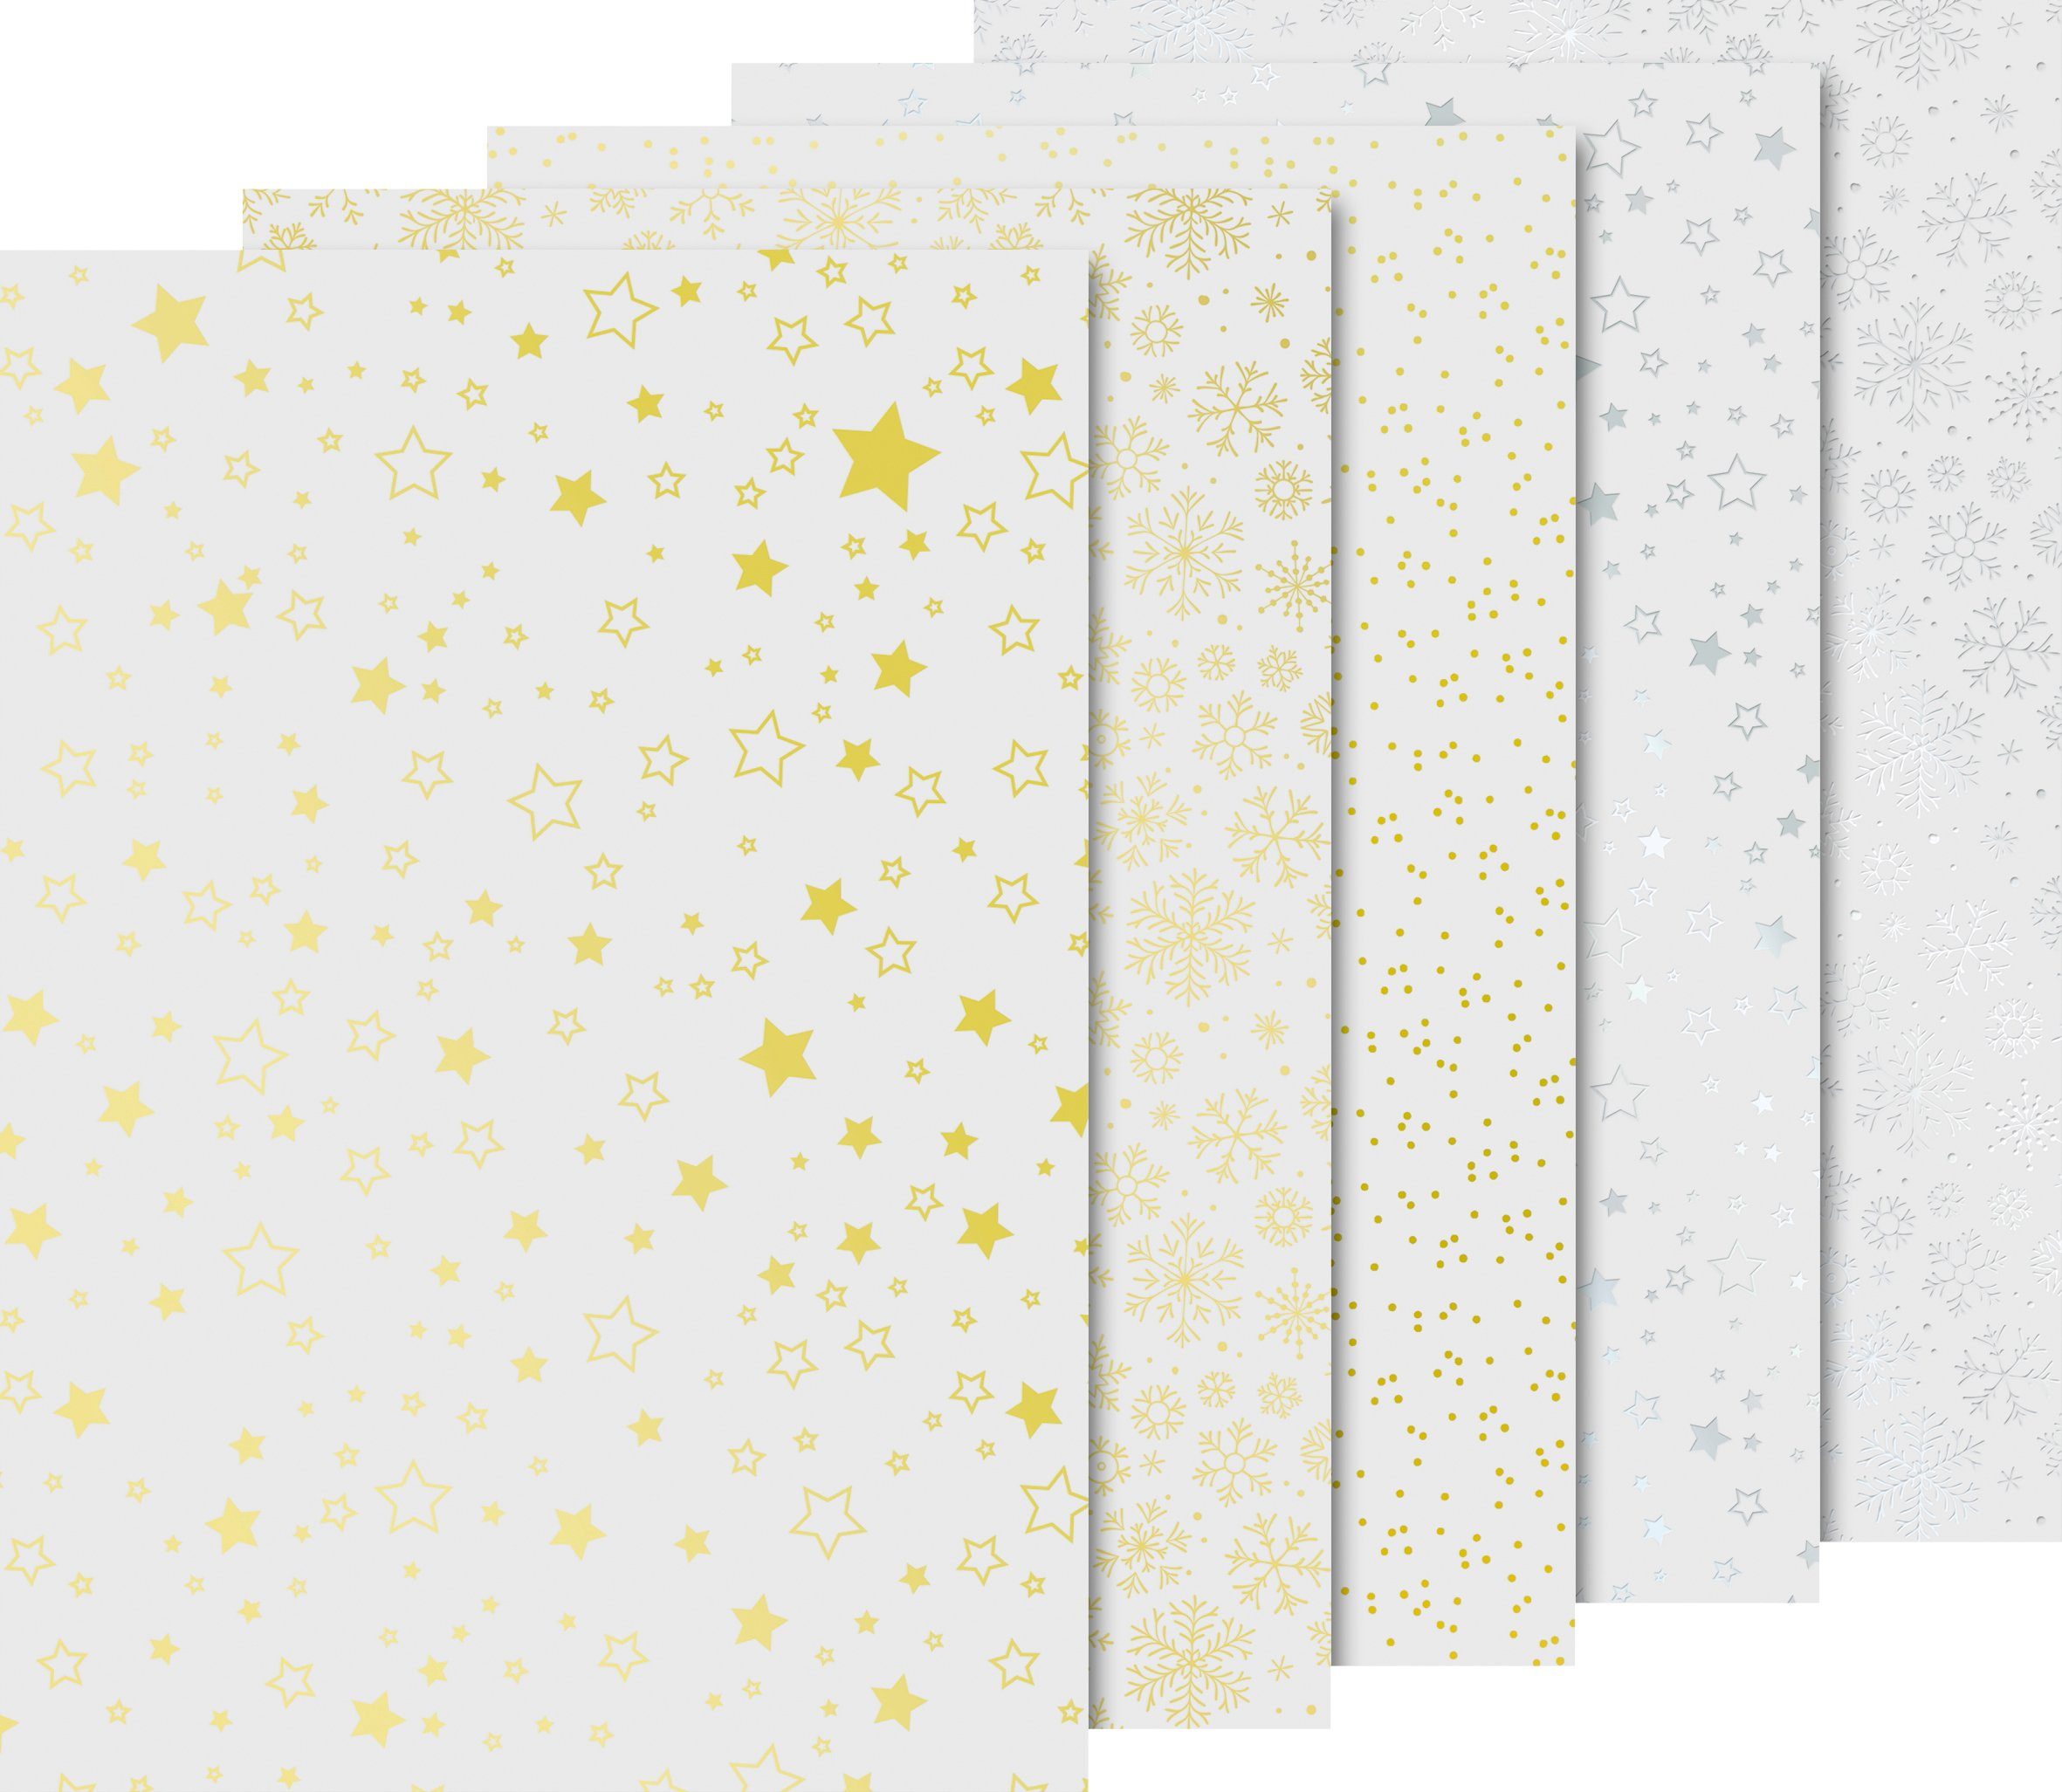 Heyda Transparentpapier »Transparentpapier-Set 'Weihnachten' Gold/Silber«,  10 Blatt online kaufen | OTTO